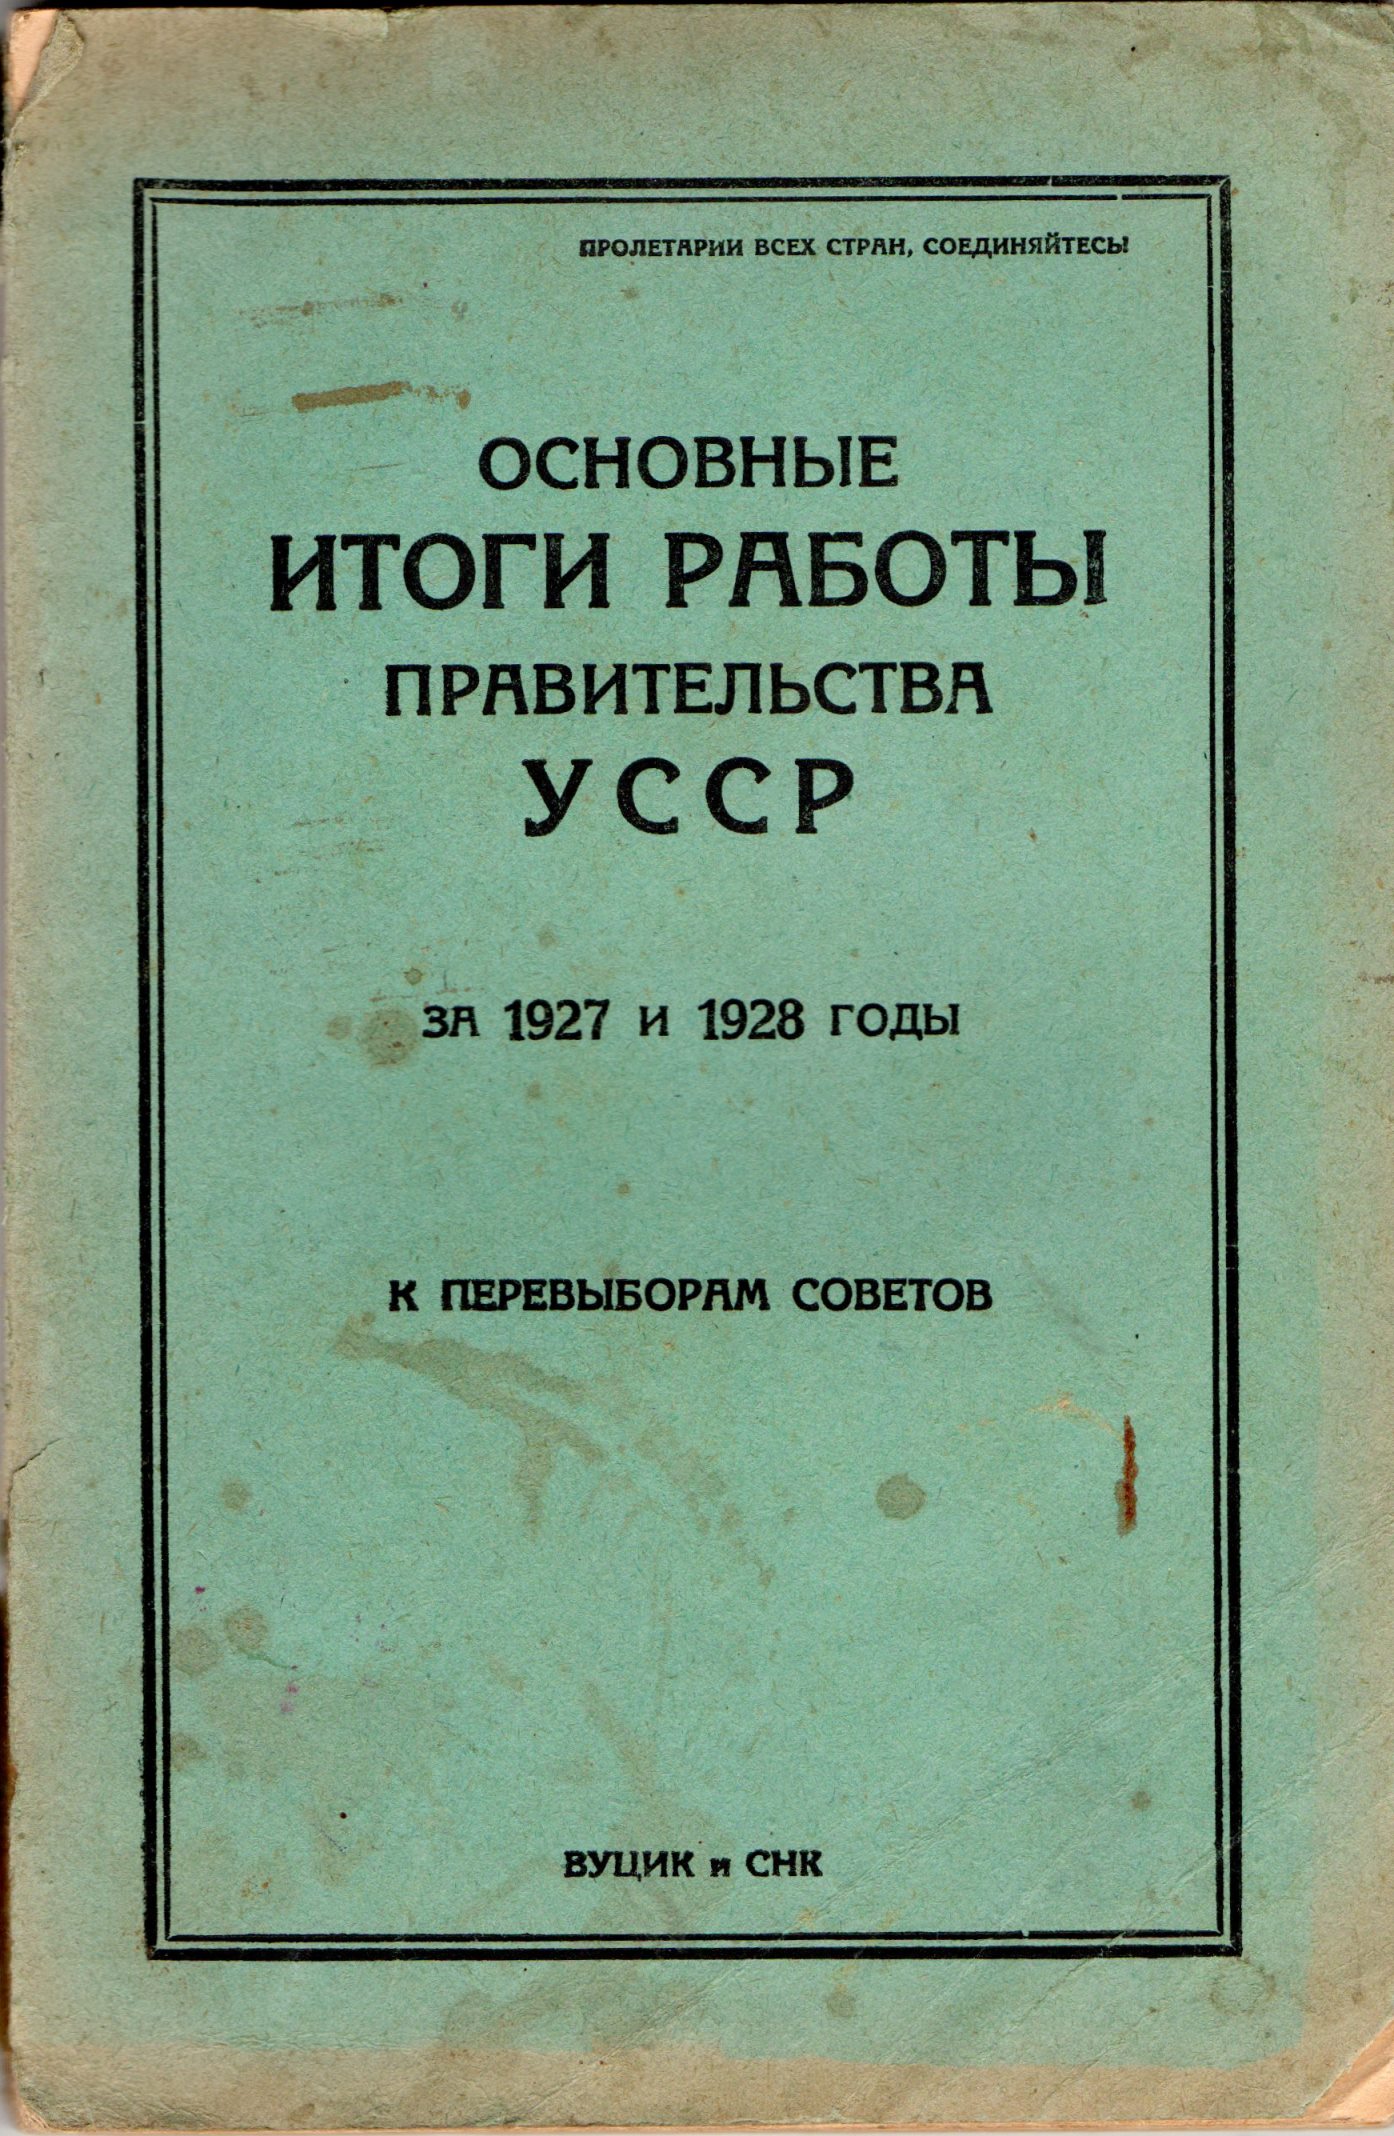 Книга "Основные итоги работы правительства УССР за 1927 и 1928 годы"